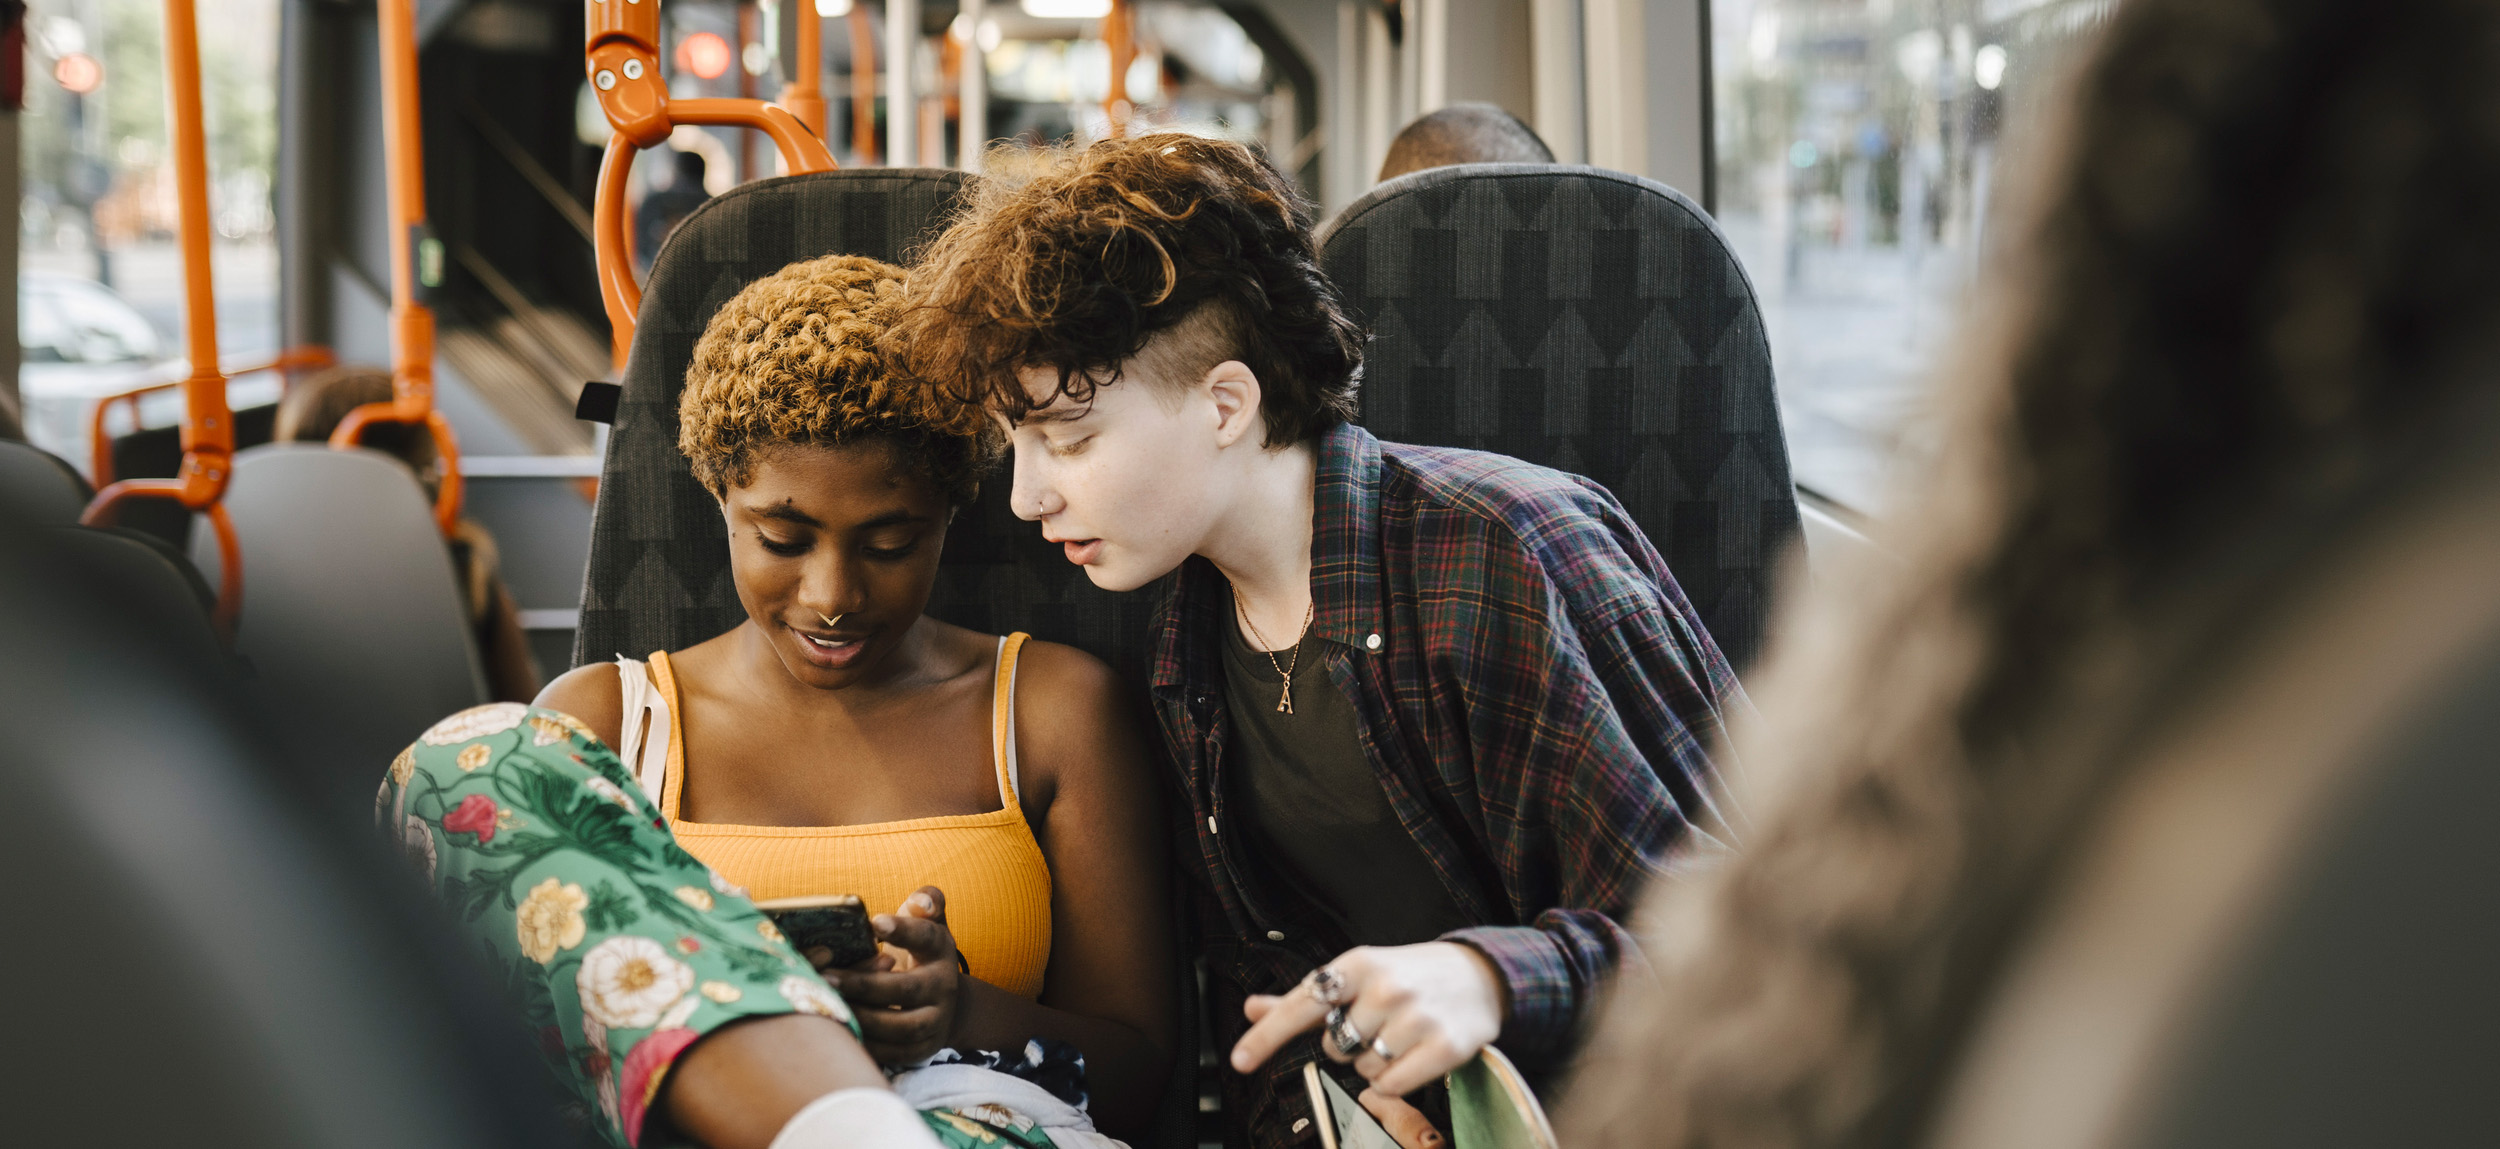 Två tonåringar på en buss.